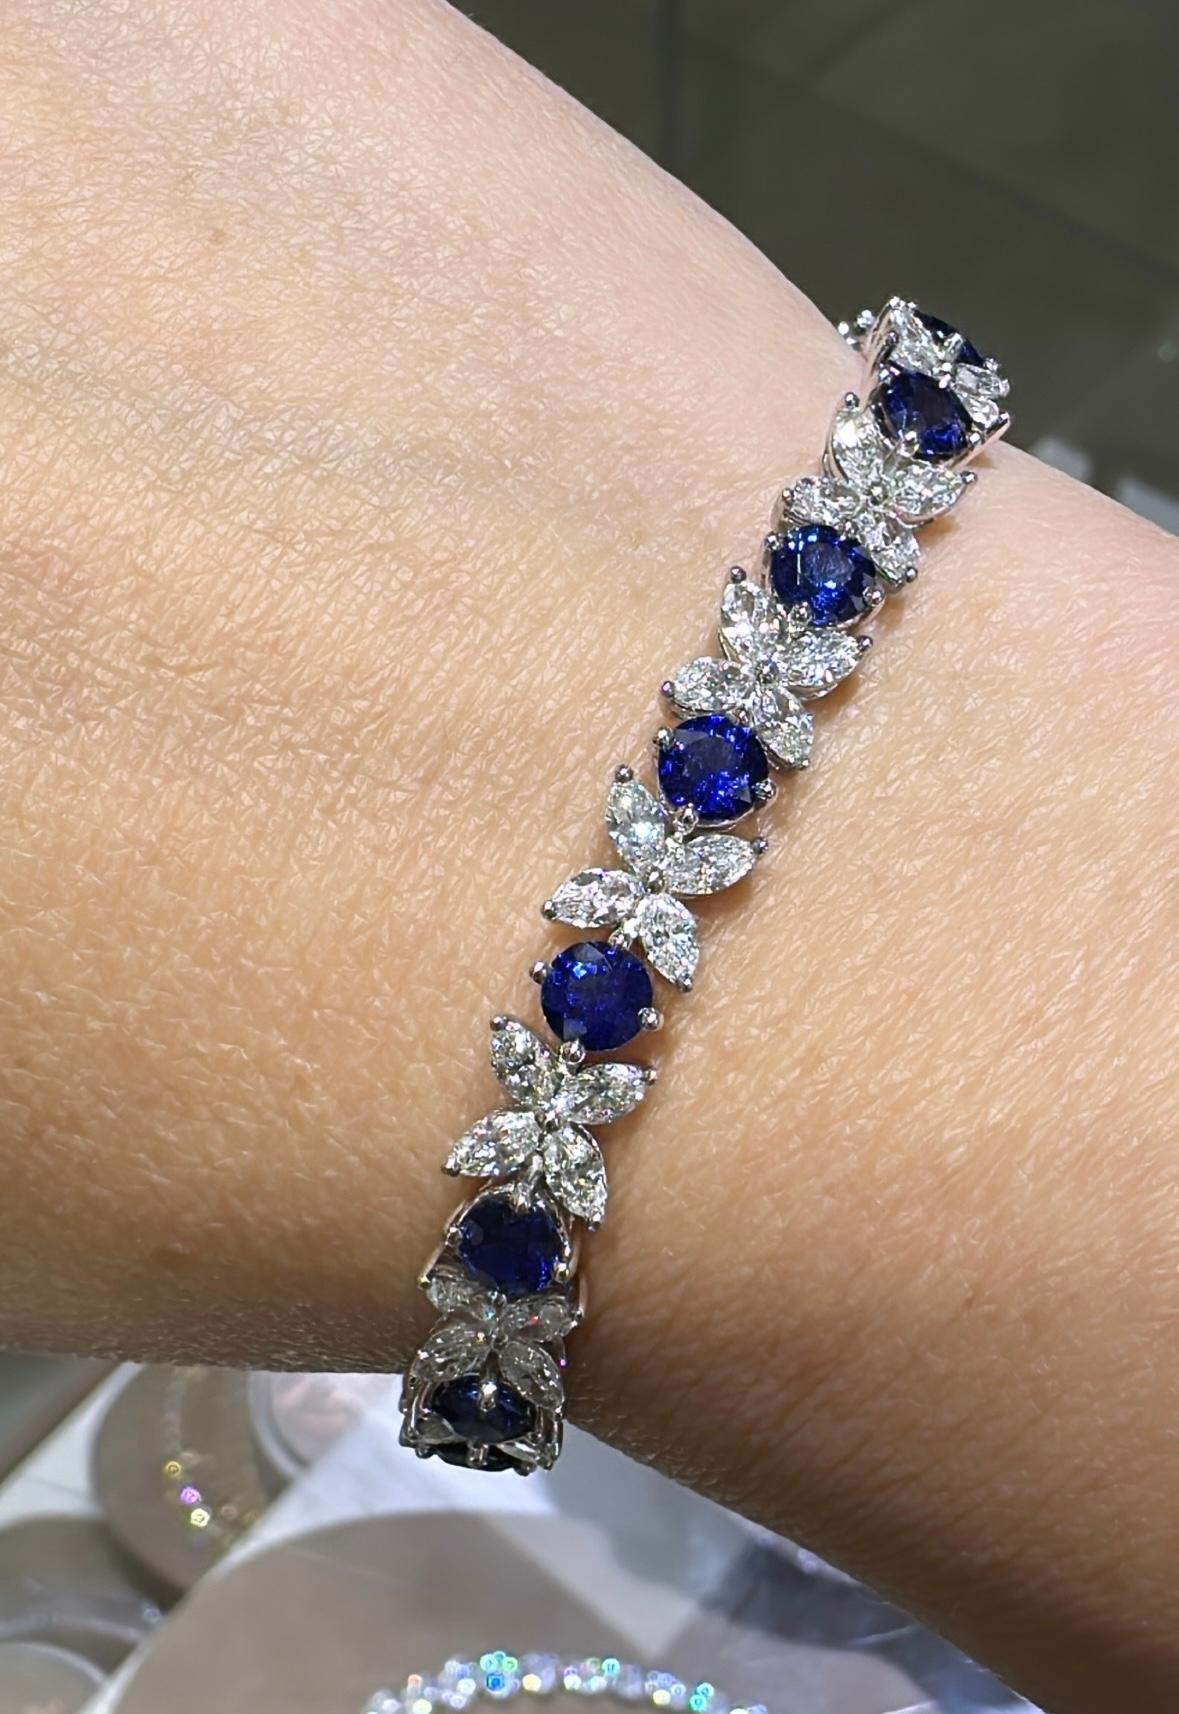 SKU: 126883
Das prächtige Armband mit 14,40 Karat Diamanten im Marquise-Schliff und blauem Saphir wird sie zum Strahlen bringen, sobald Sie es an ihr Handgelenk legen. Die wunderschöne Fassung mit Diamanten im Marquise-Schliff und königsblauen